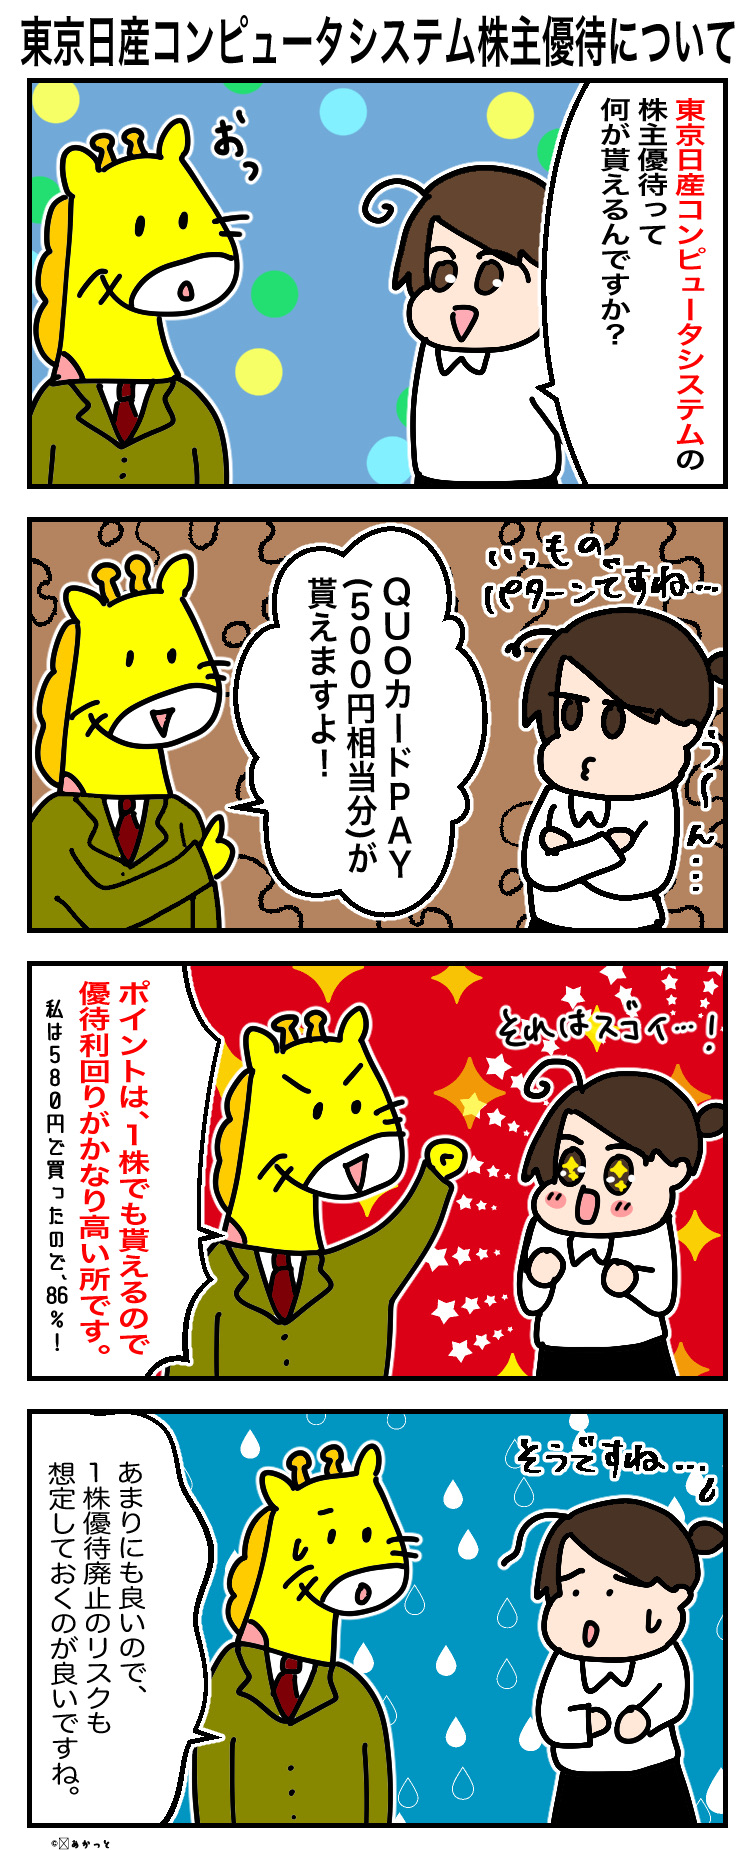 東京日産コンピュータシステム(3316)株主優待についての解説漫画